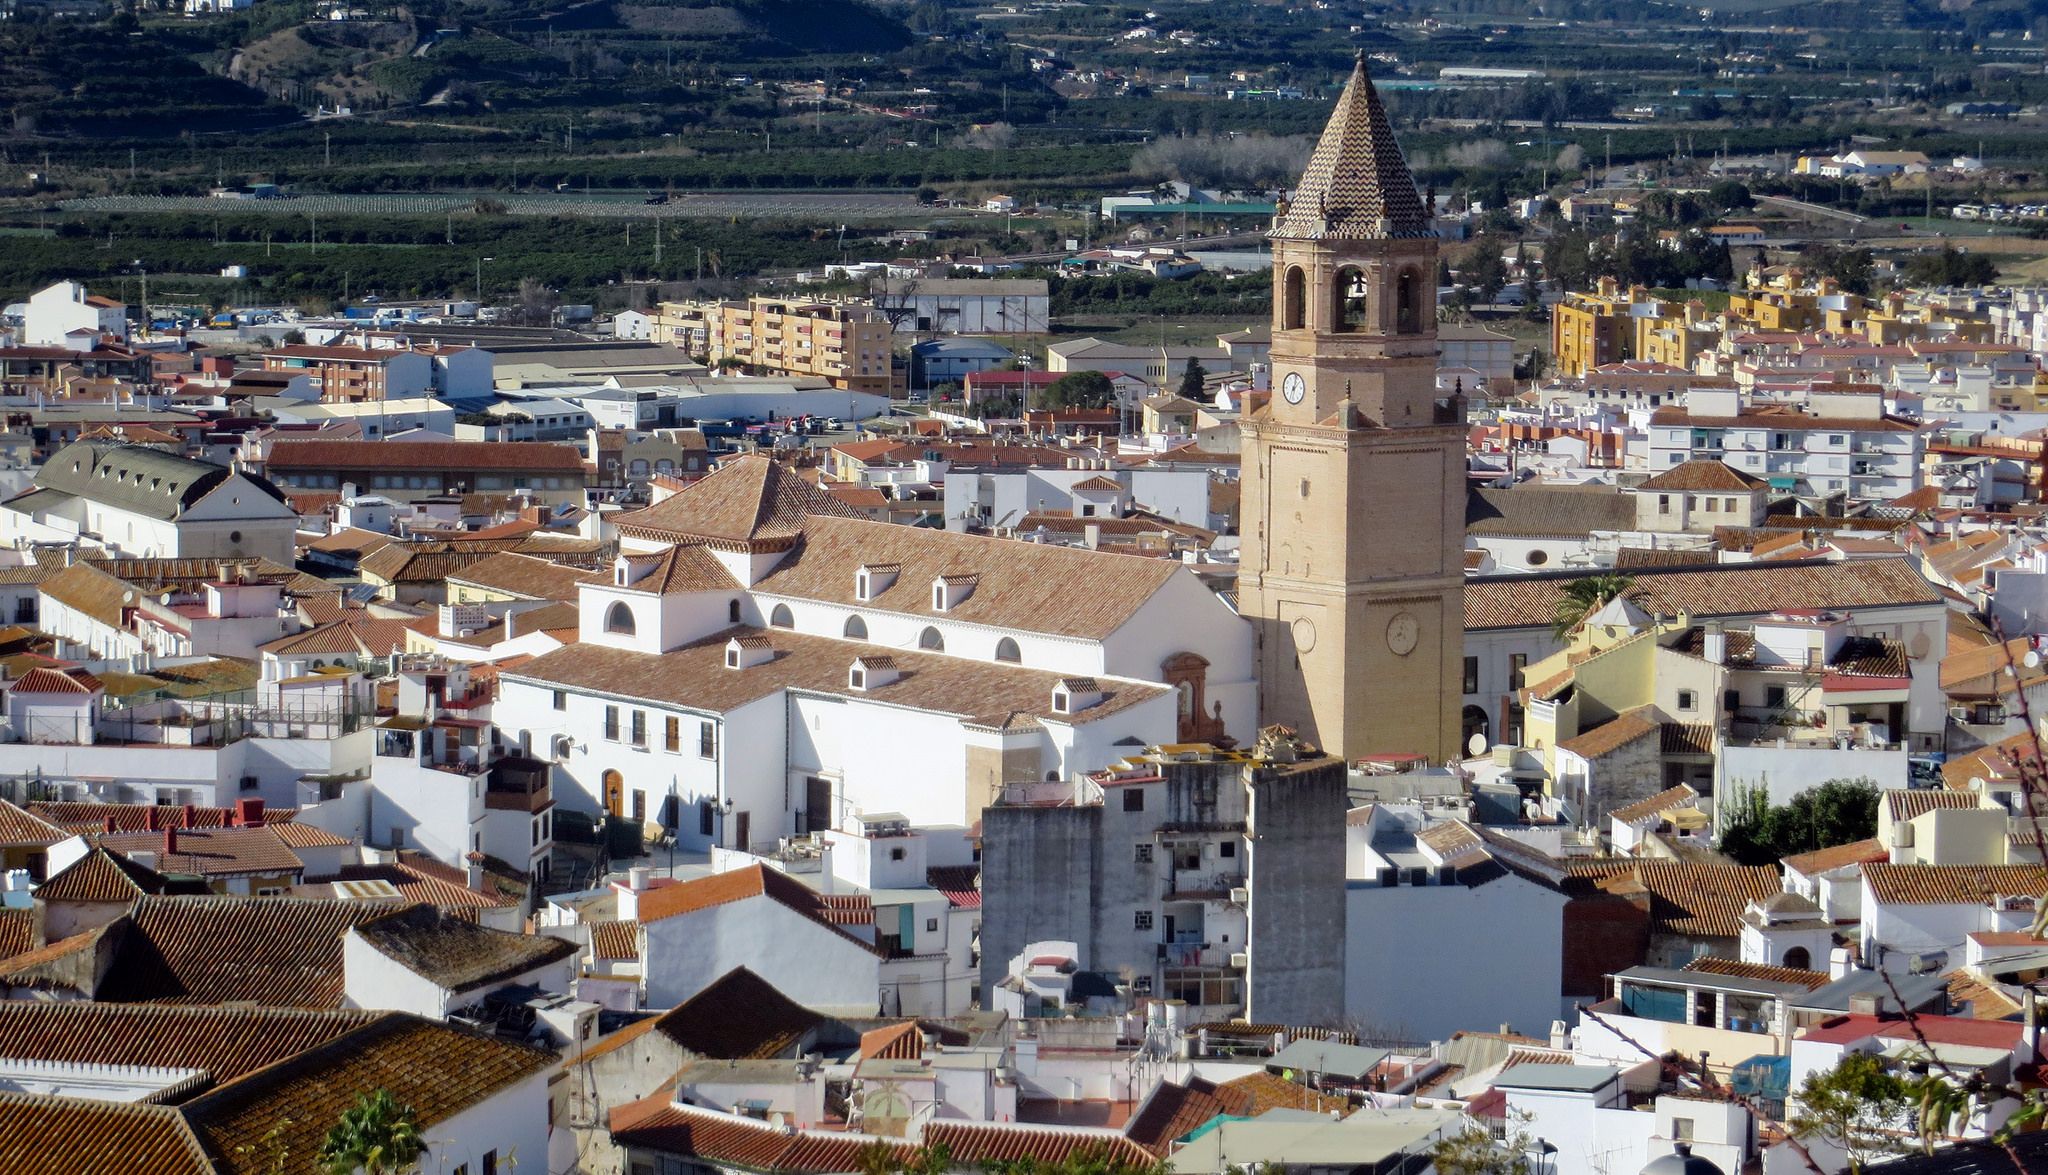 Vista general de Vélez-Málaga. FOTO: Wayloncash (Flickr.com)